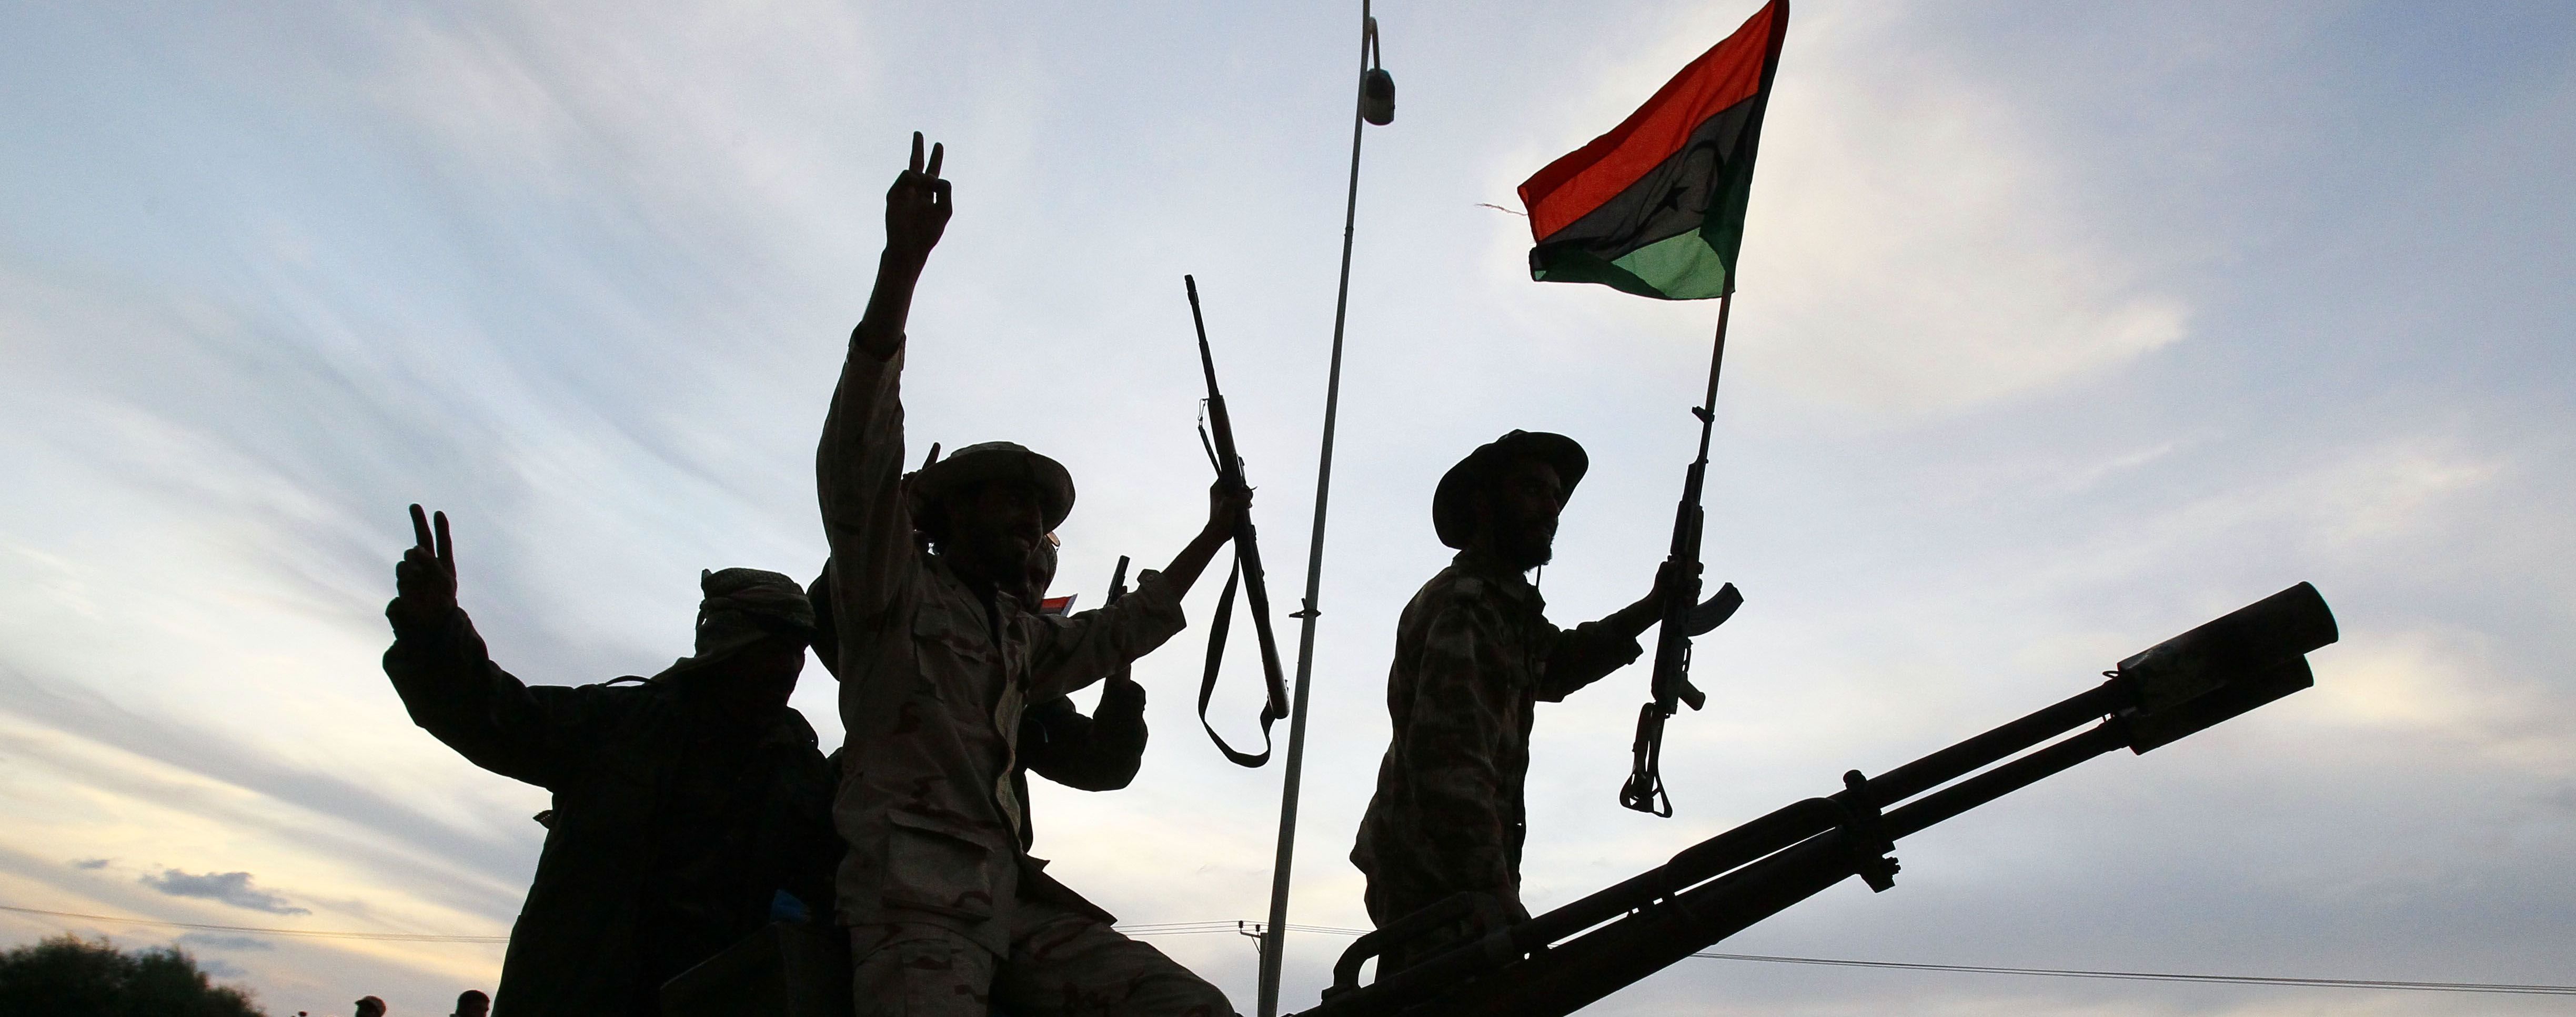 Стороны конфликта в Ливии договорились о перемирии